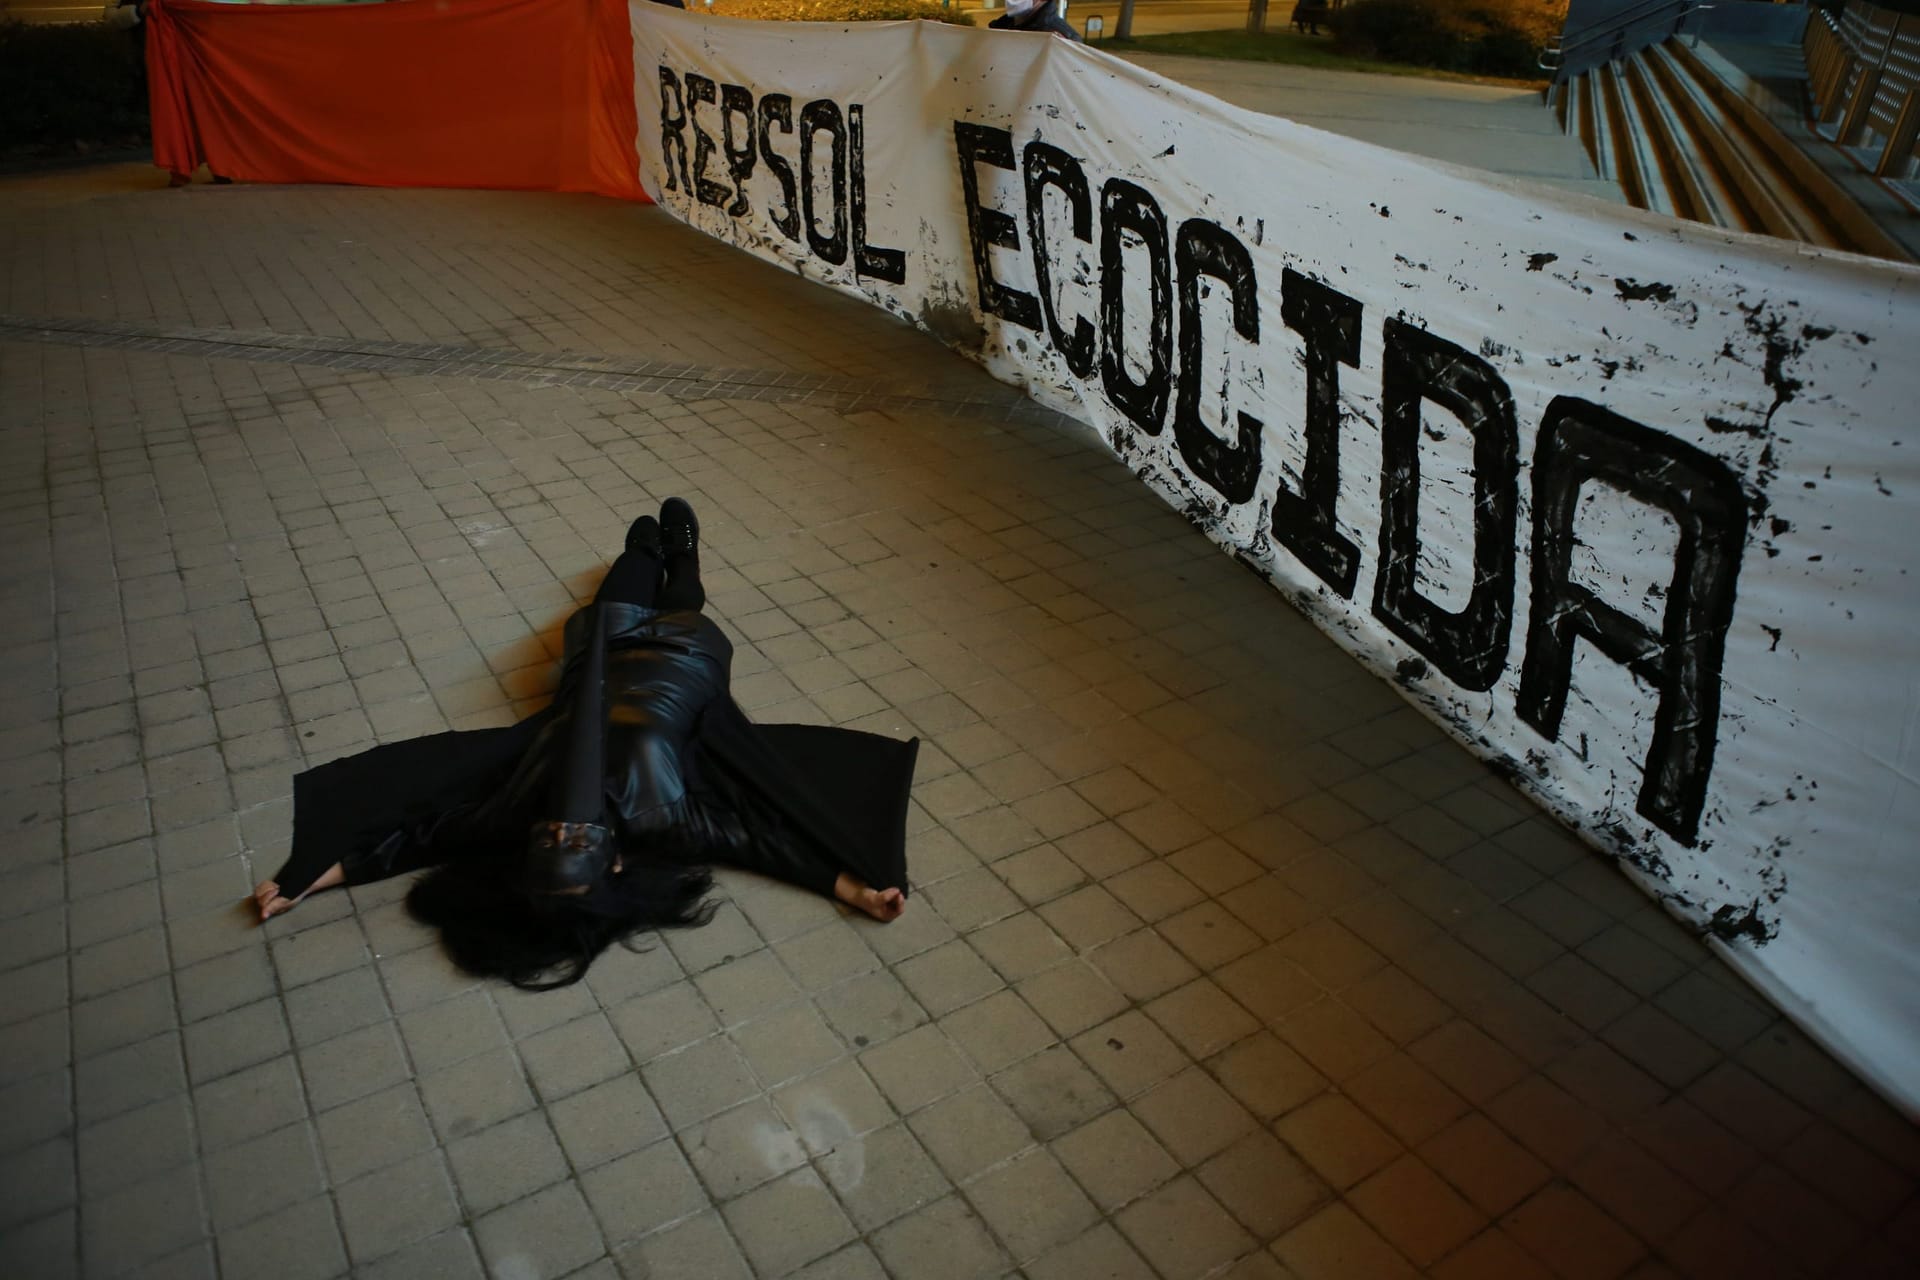 Concentracion contra Repsol en Madrid